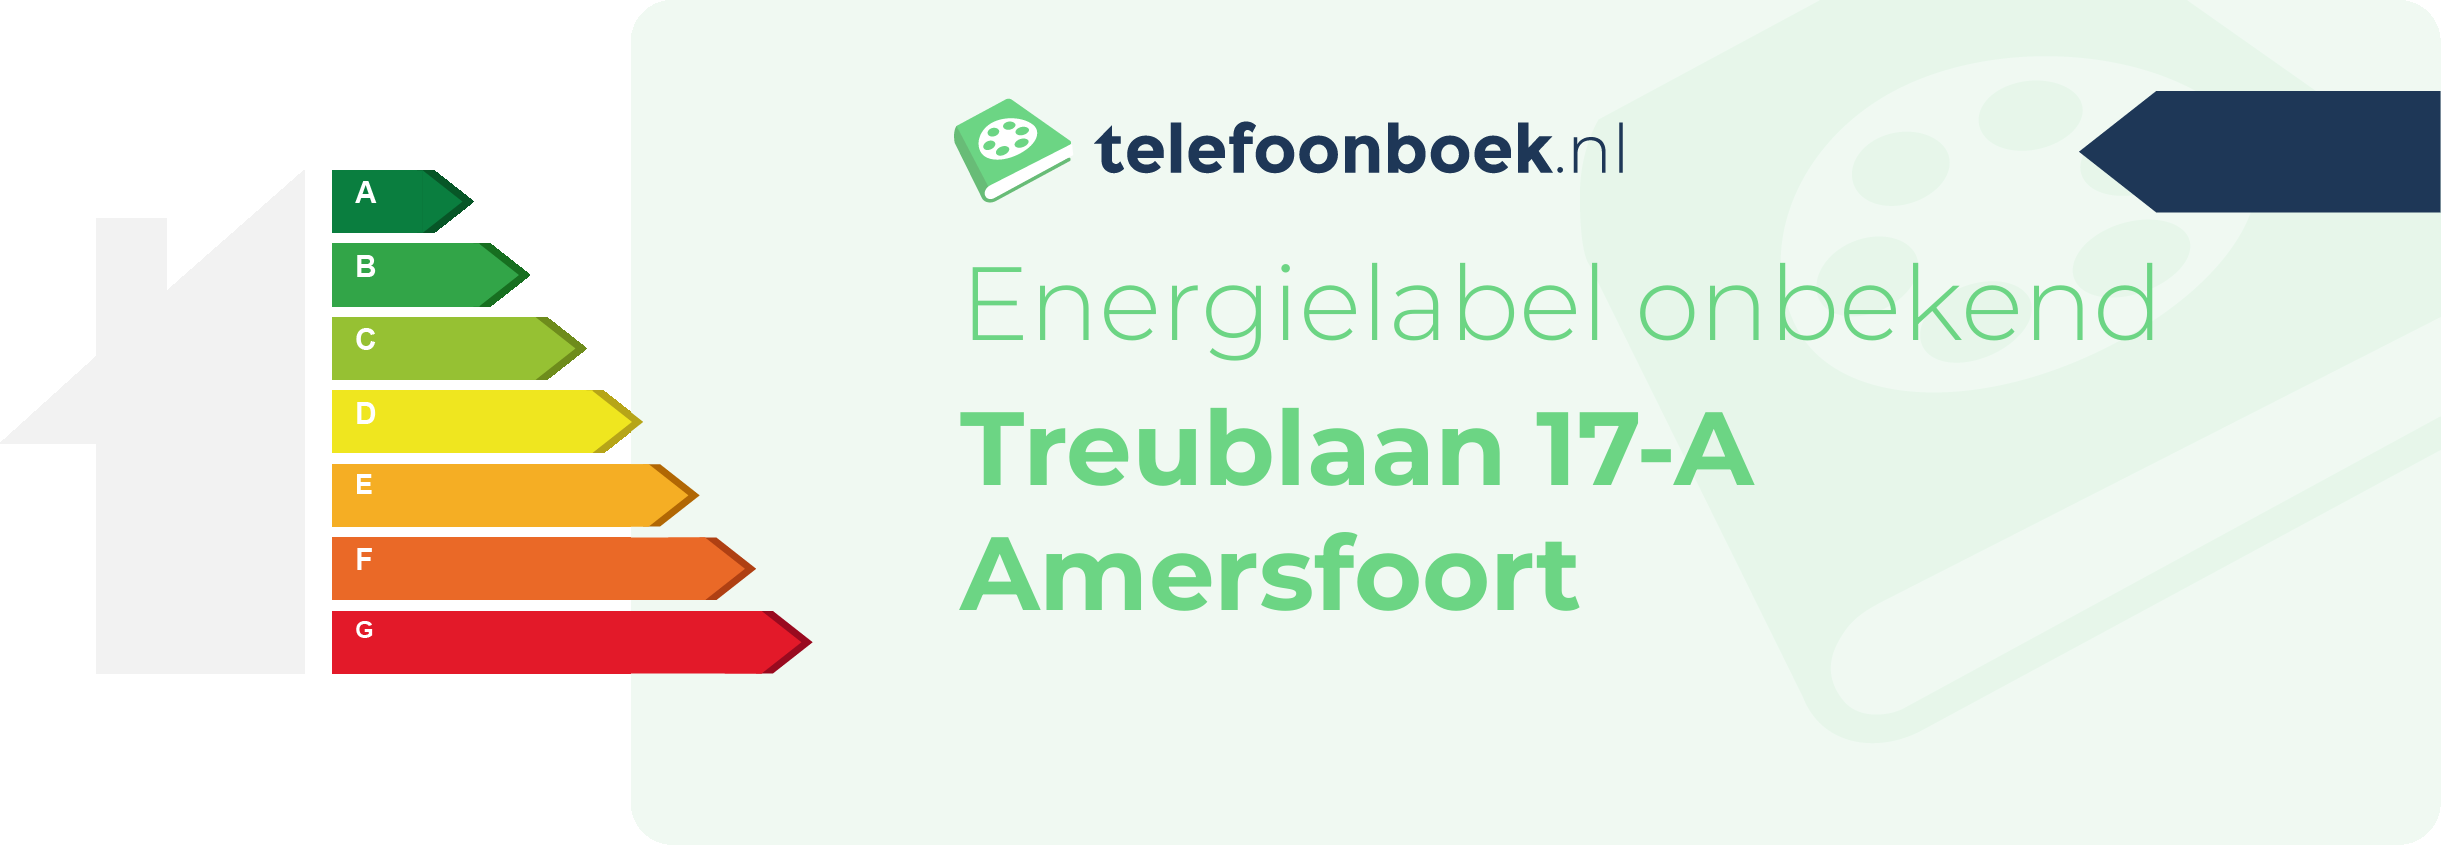 Energielabel Treublaan 17-A Amersfoort